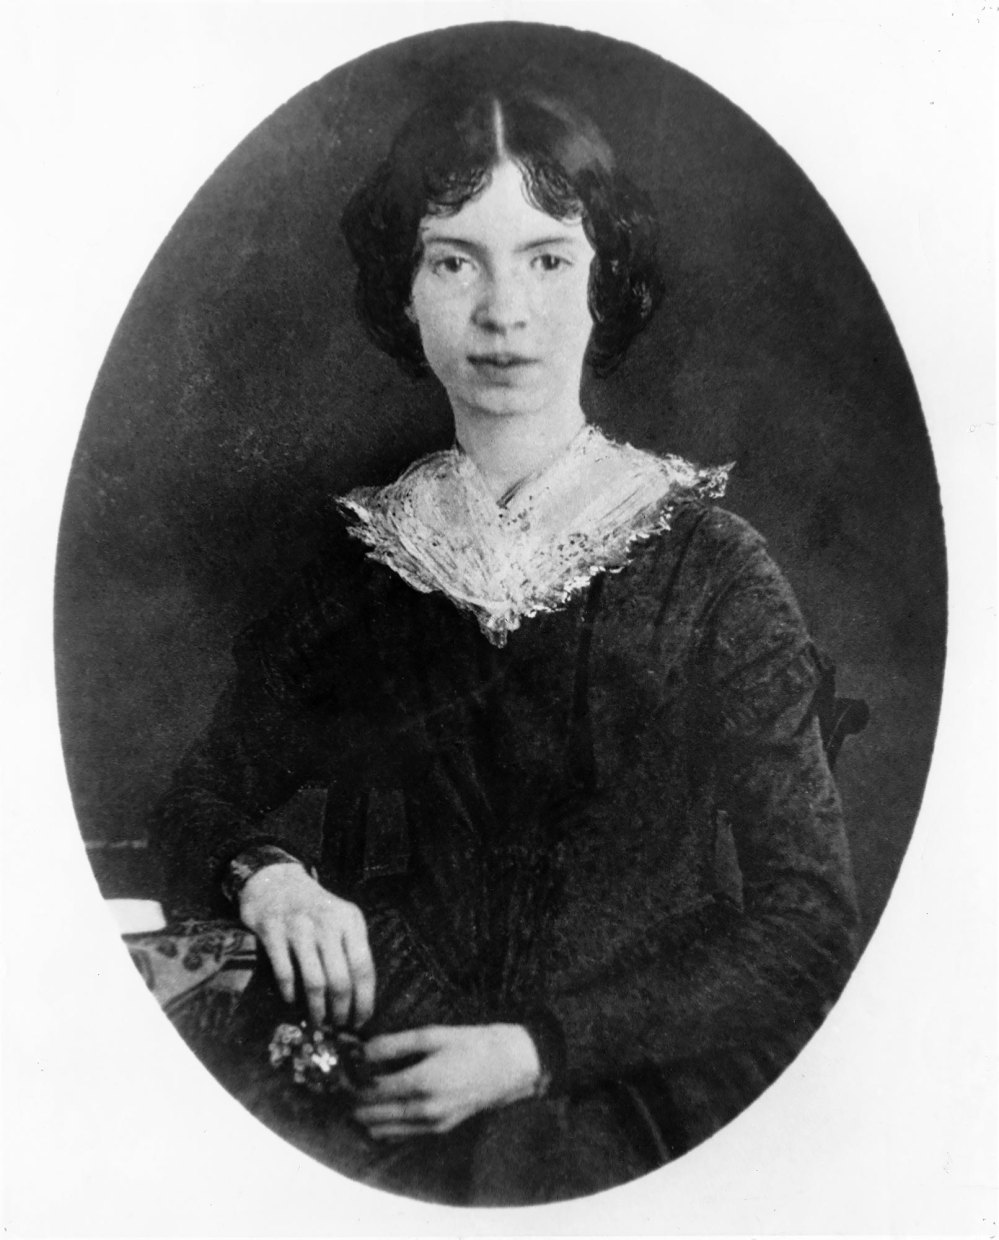 Ancestry enthüllt, dass Taylor Swift mit der verstorbenen Dichterin Emily Dickinson verwandt ist